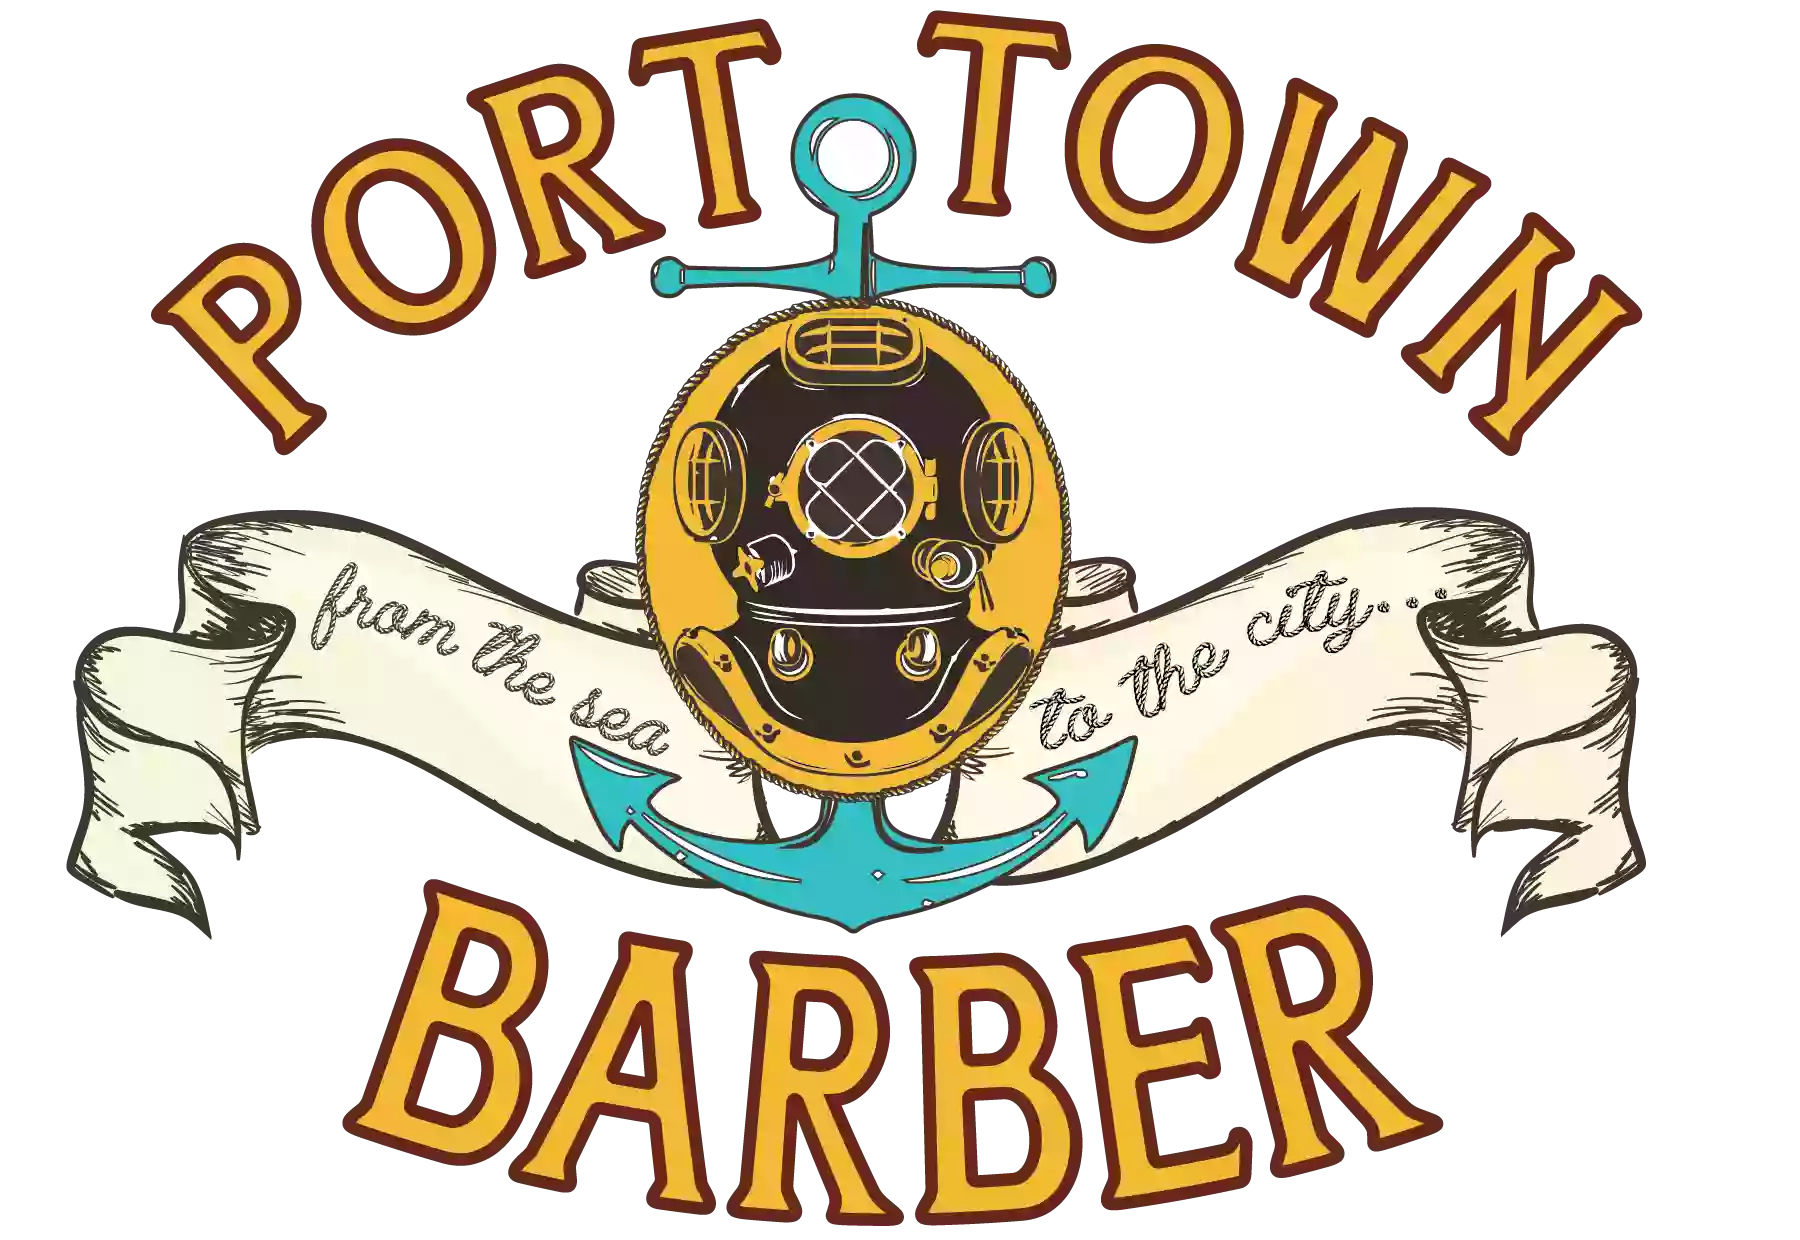 Port Town Barber